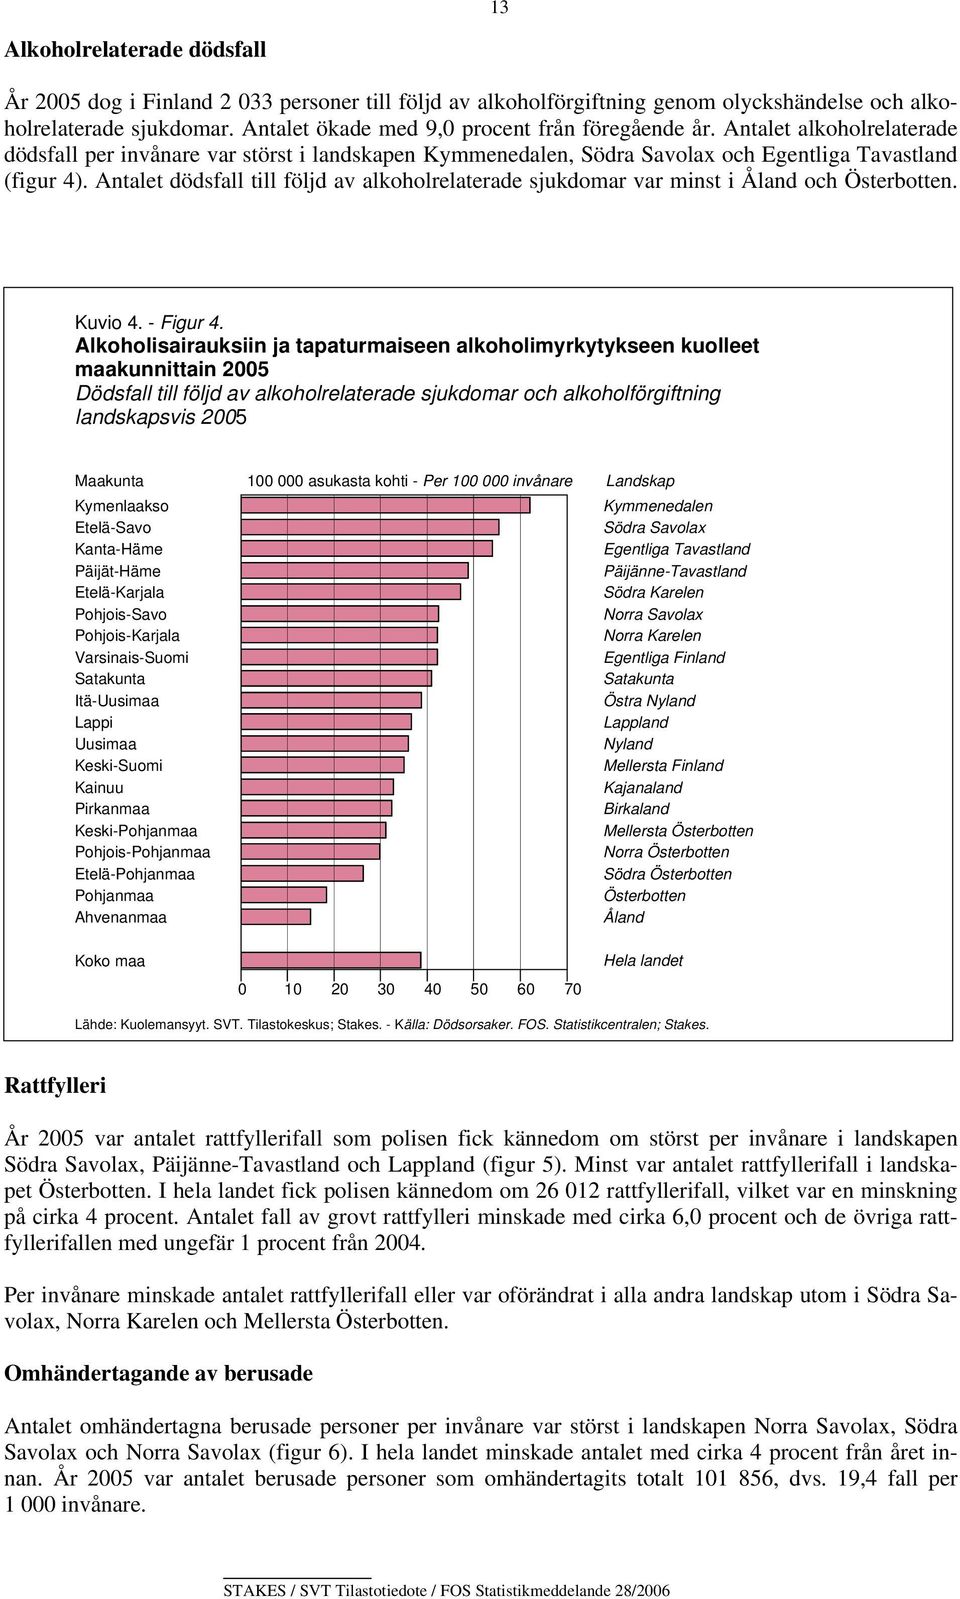 Antalet dödsfall till följd av alkoholrelaterade sjukdomar var minst i Åland och Österbotten. Kuvio 4. - Figur 4.